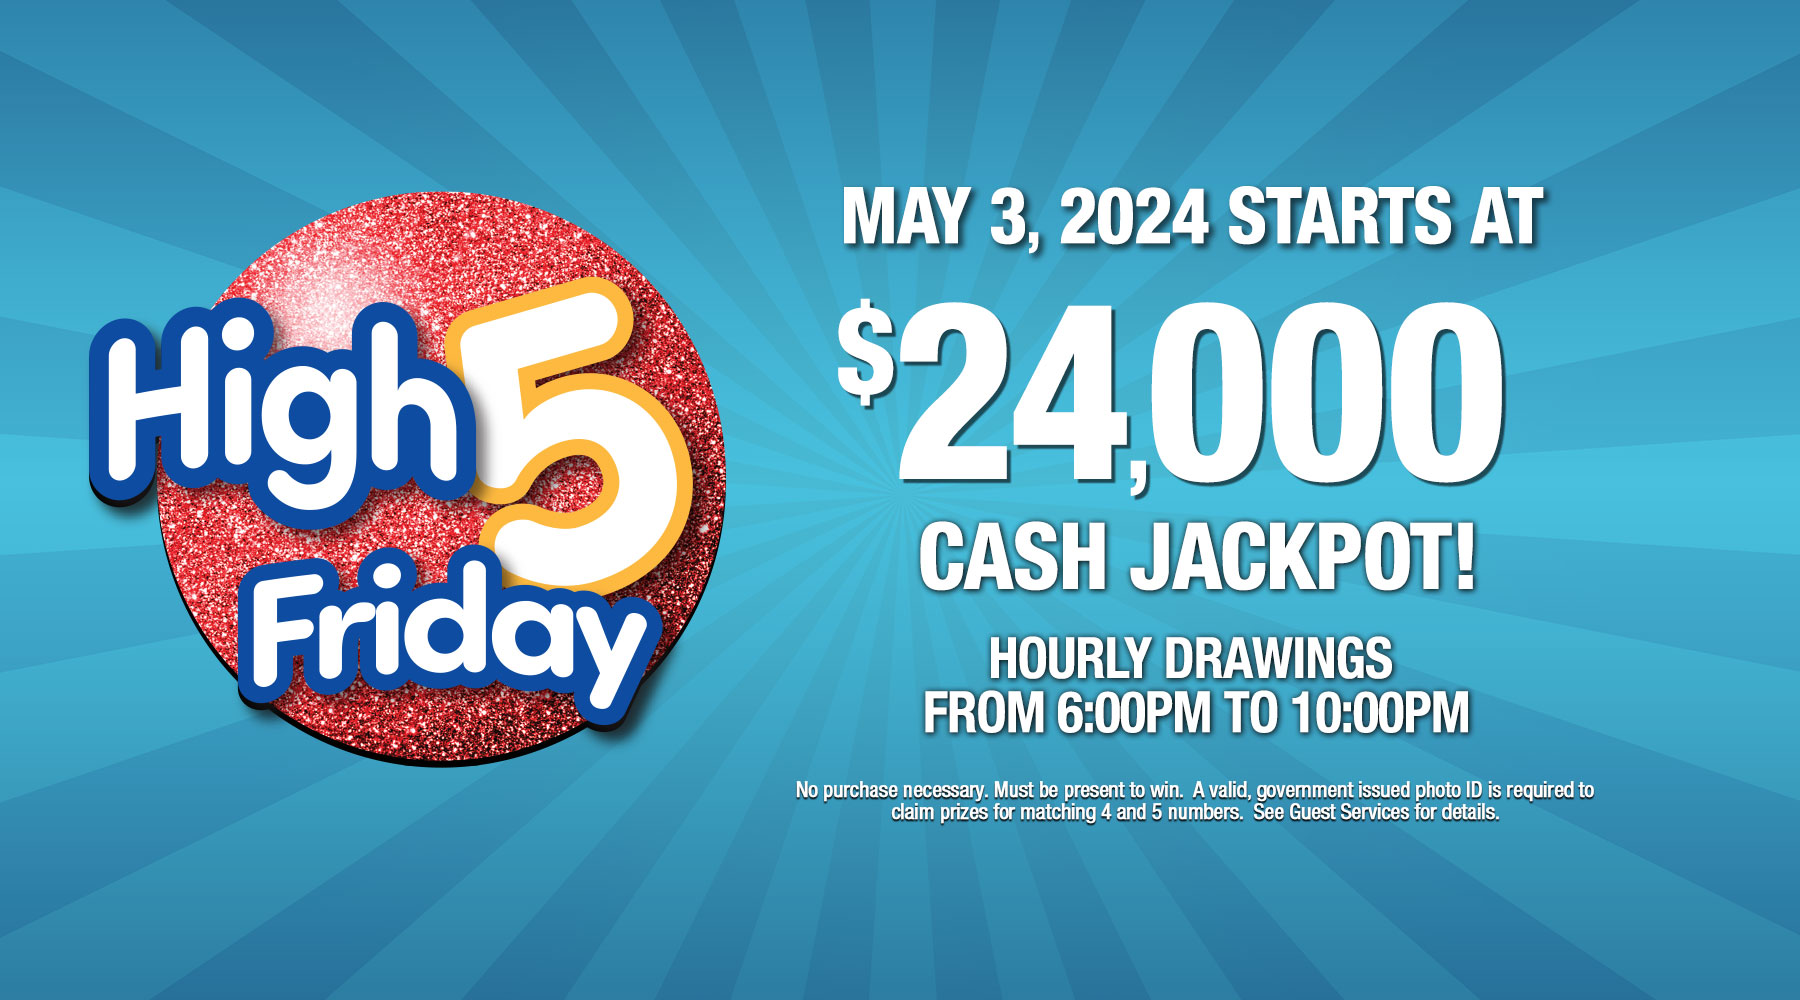 High 5 Friday CASH jackpot starts at $24,000 on May 3, 2024